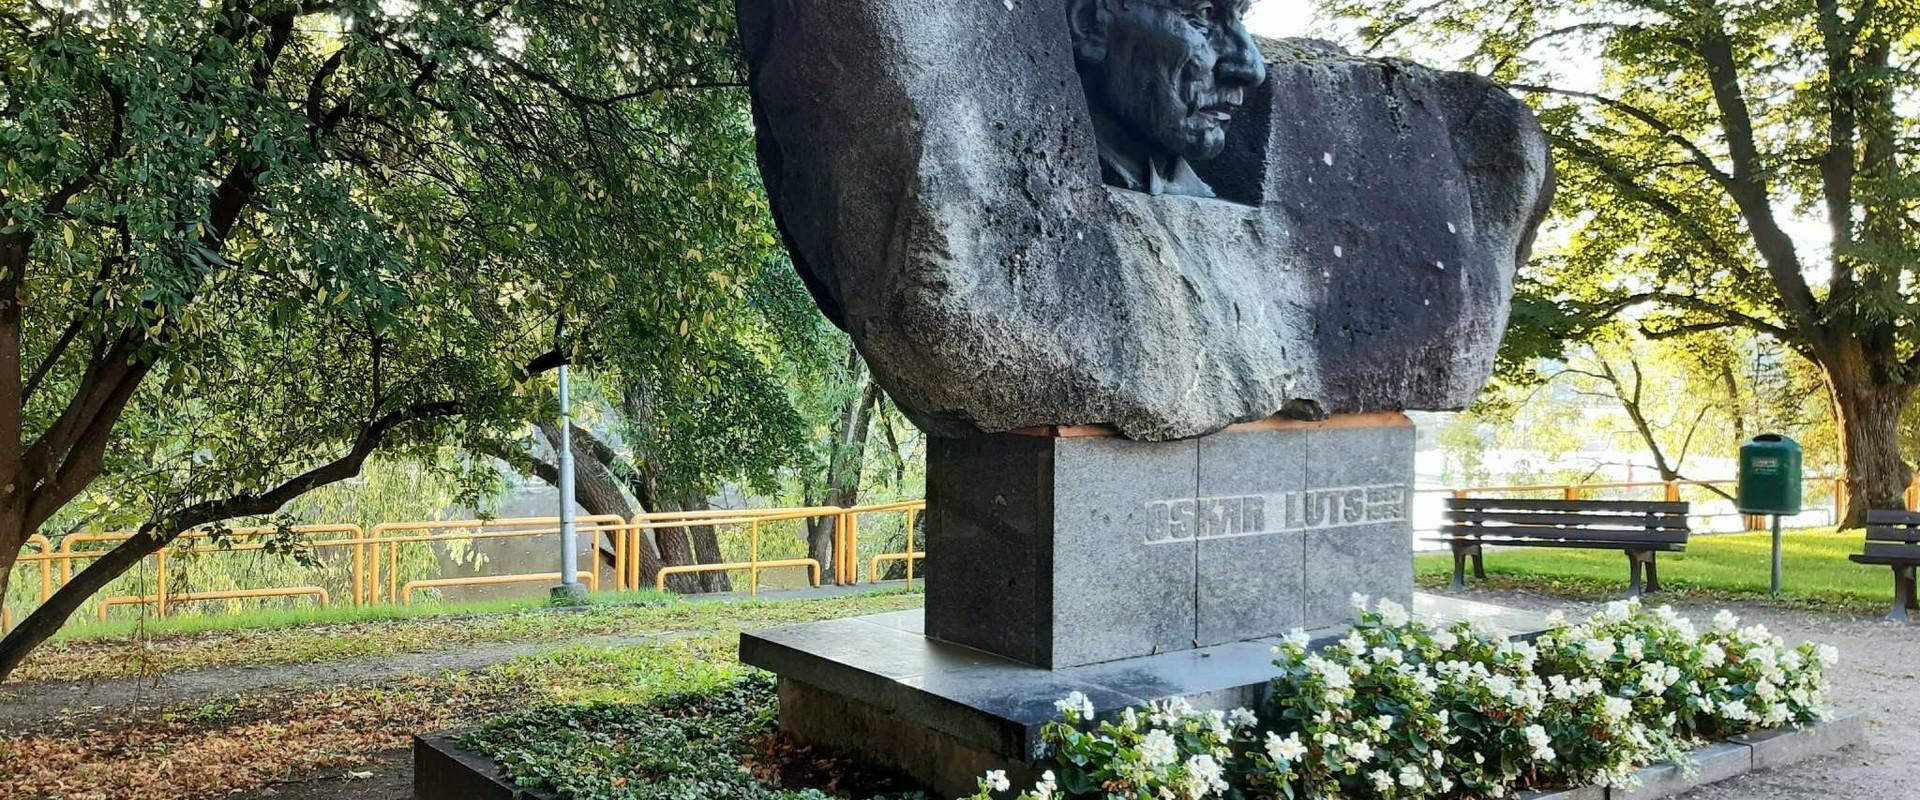 Statue of Oskar Luts